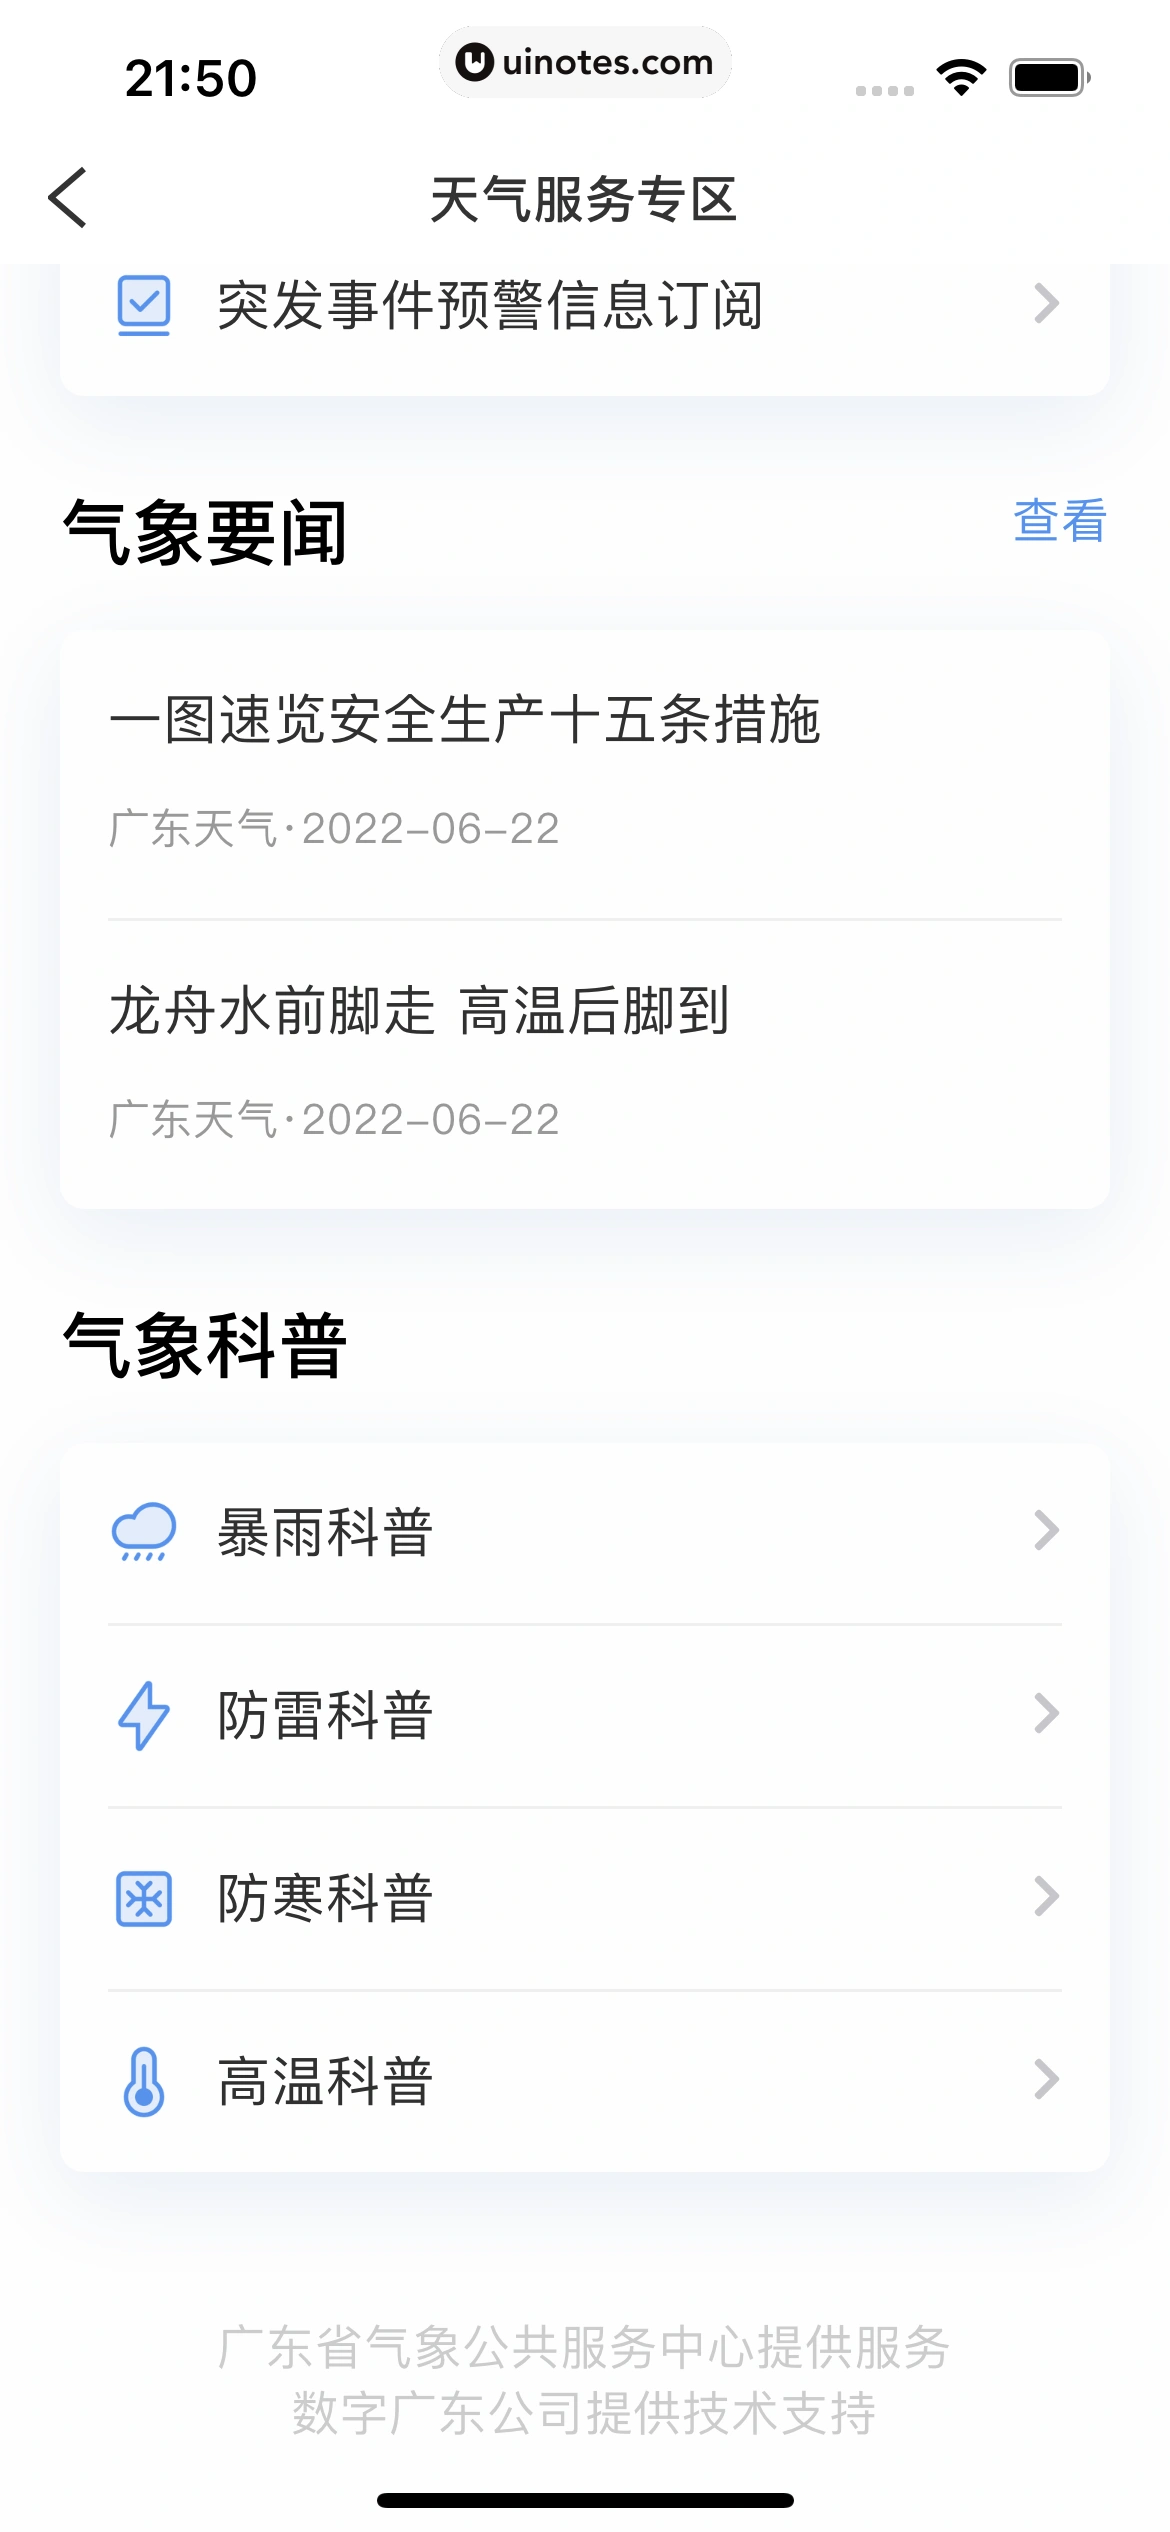 粤省事 App 截图 070 - UI Notes